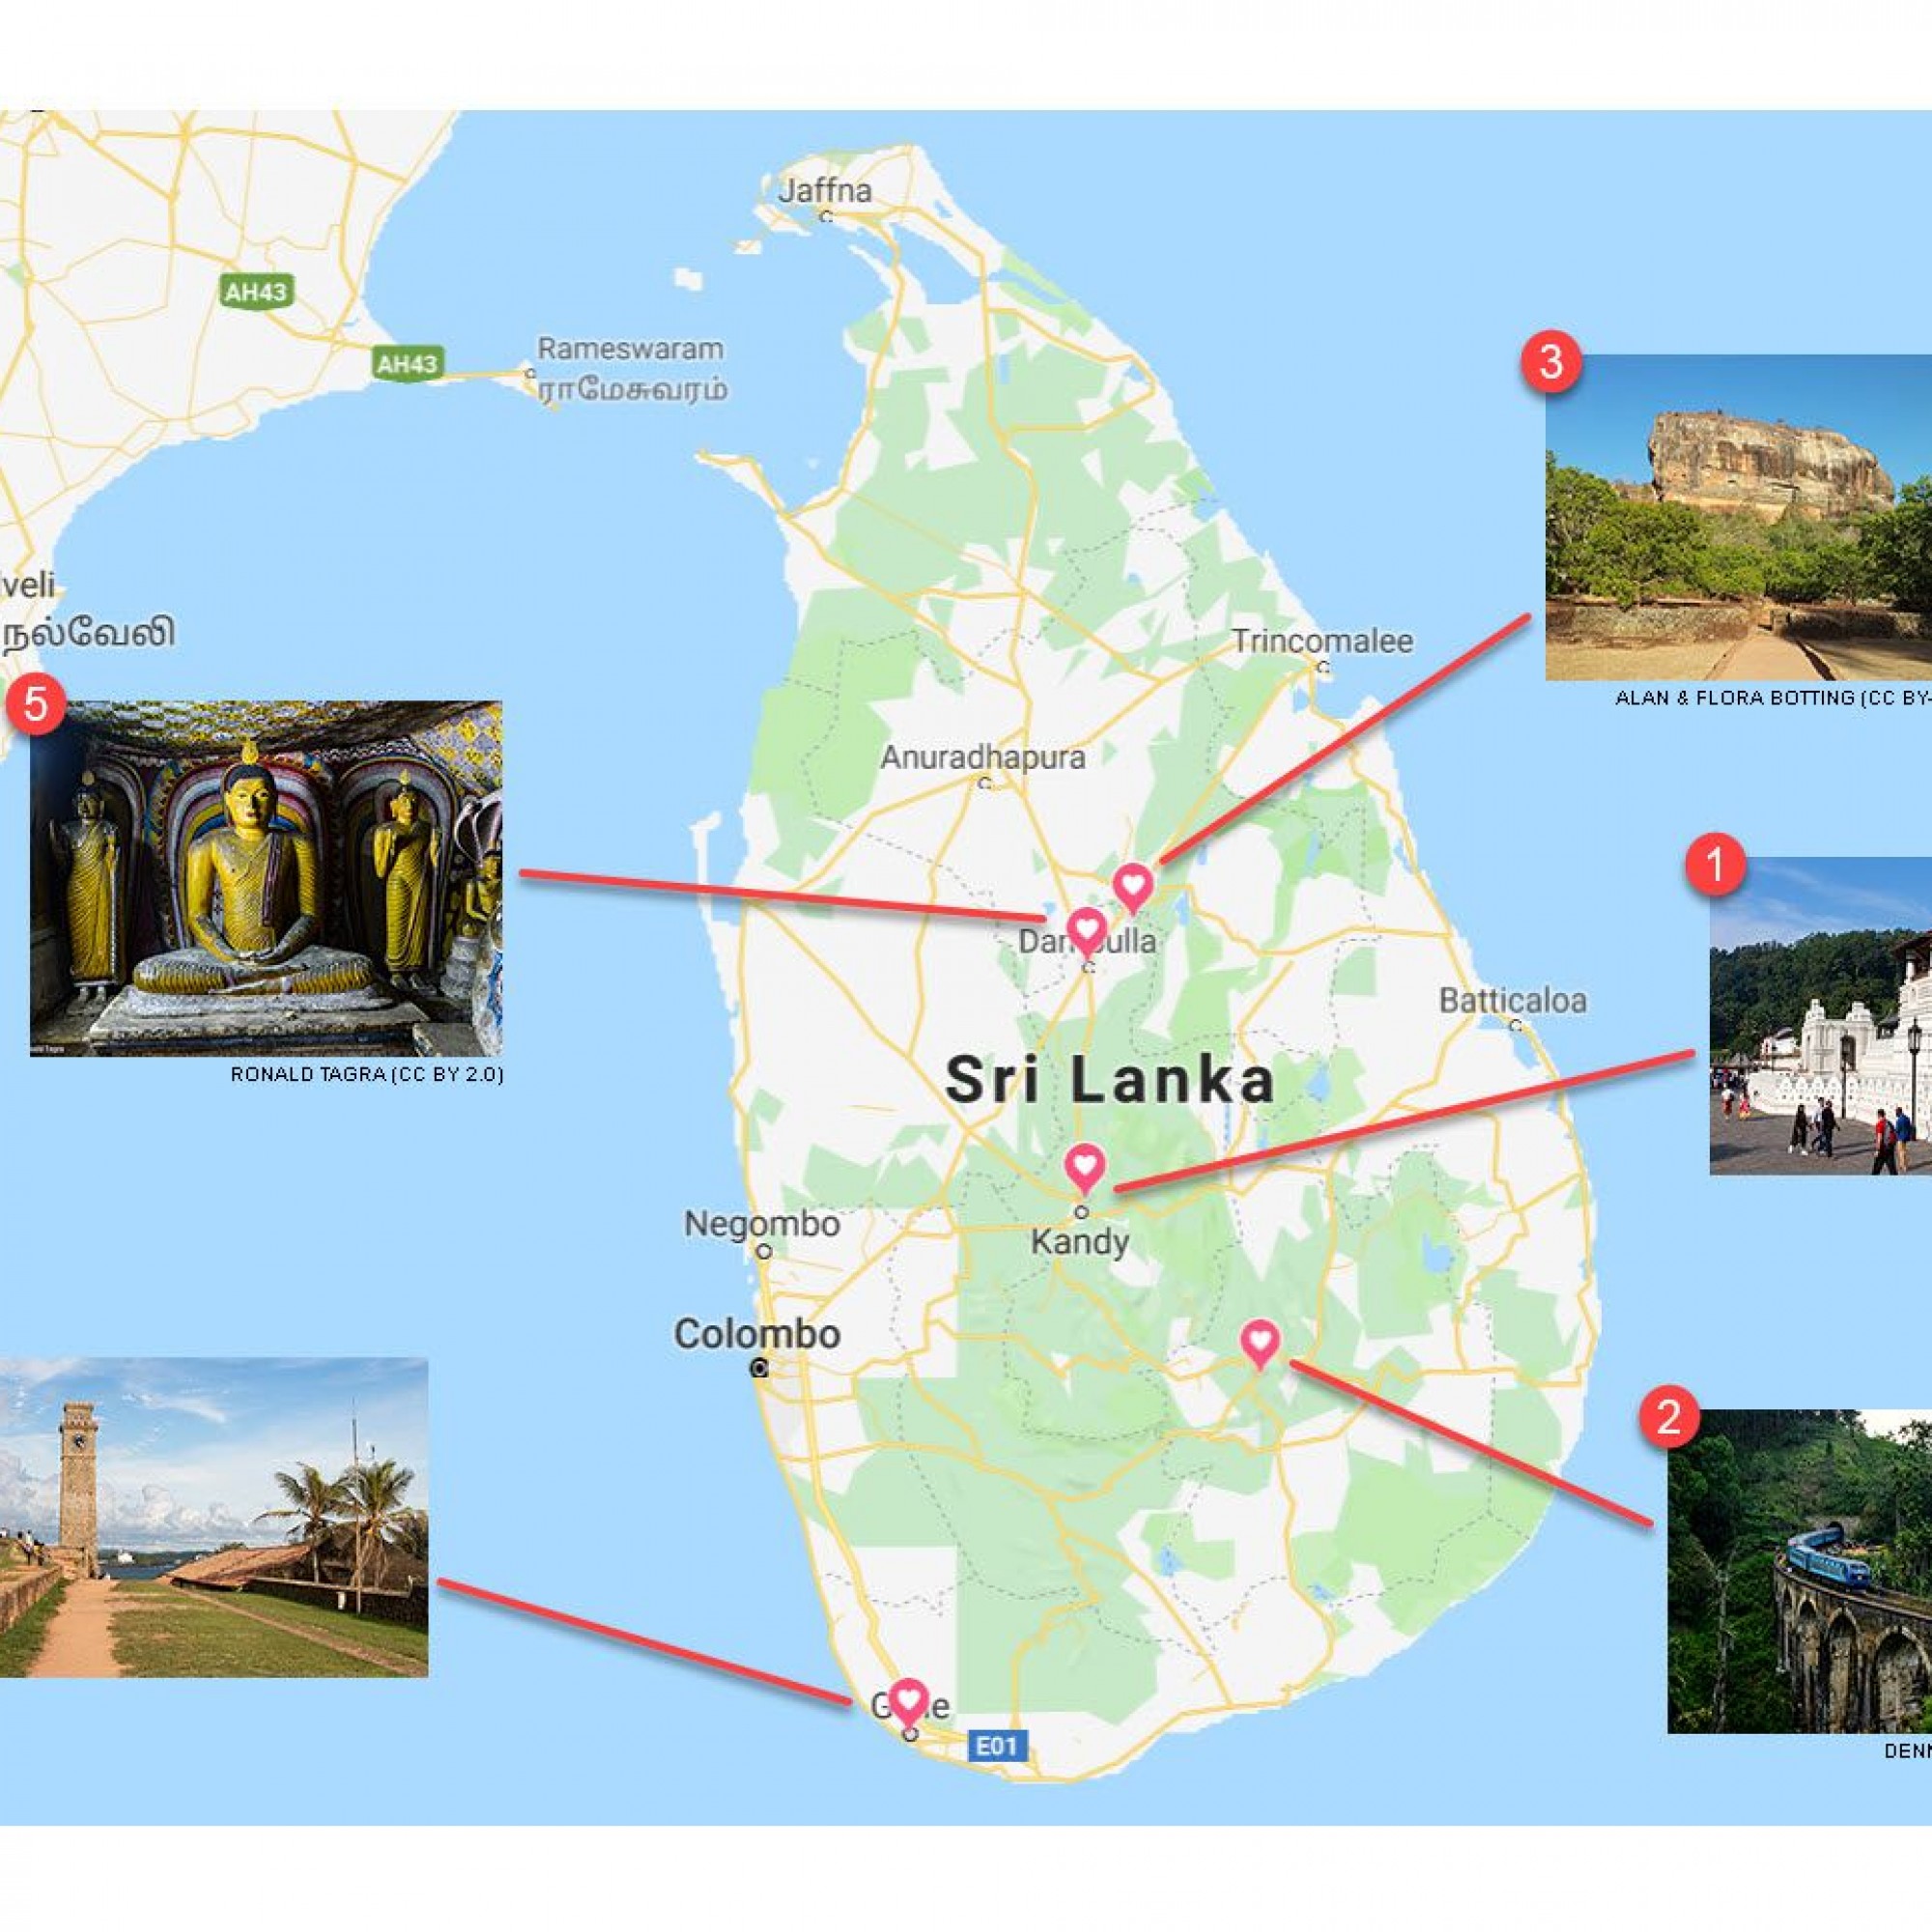 Baublatt-Favoriten der historischen Bauwerke in Sri Lanka